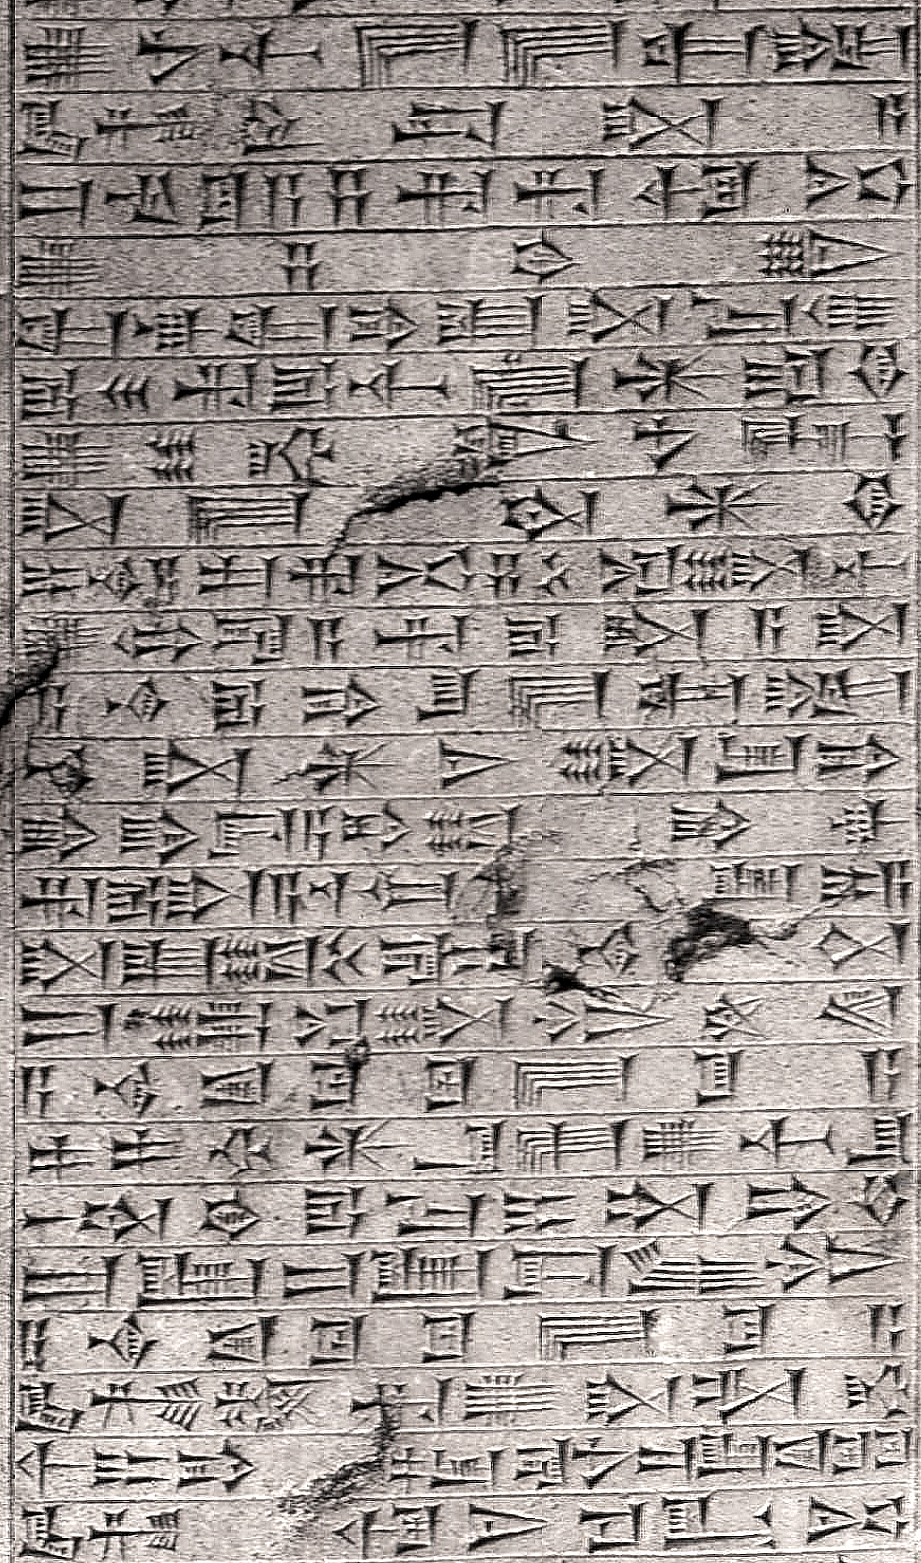 Cuneiform_script.jpg